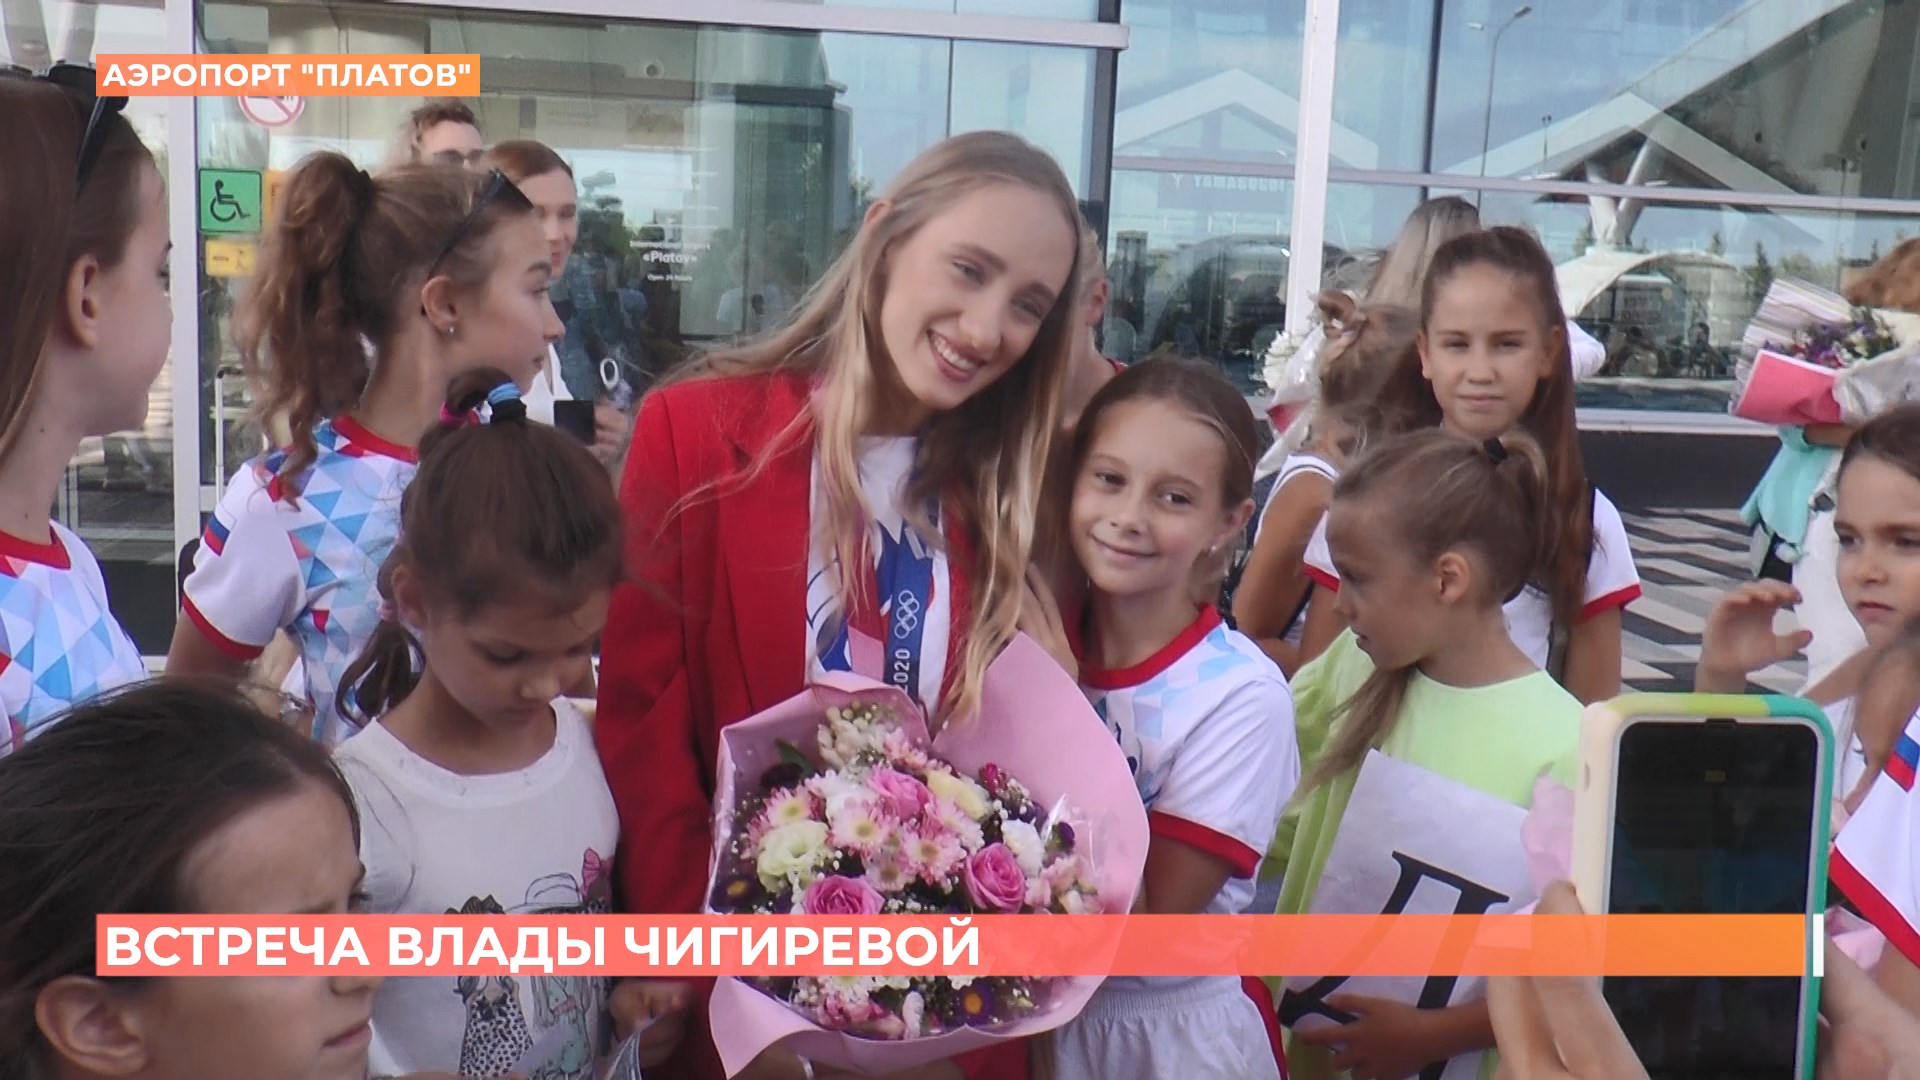 В Ростов прилетела олимпийская чемпионка по синхронному плаванию Влада Чигирёва